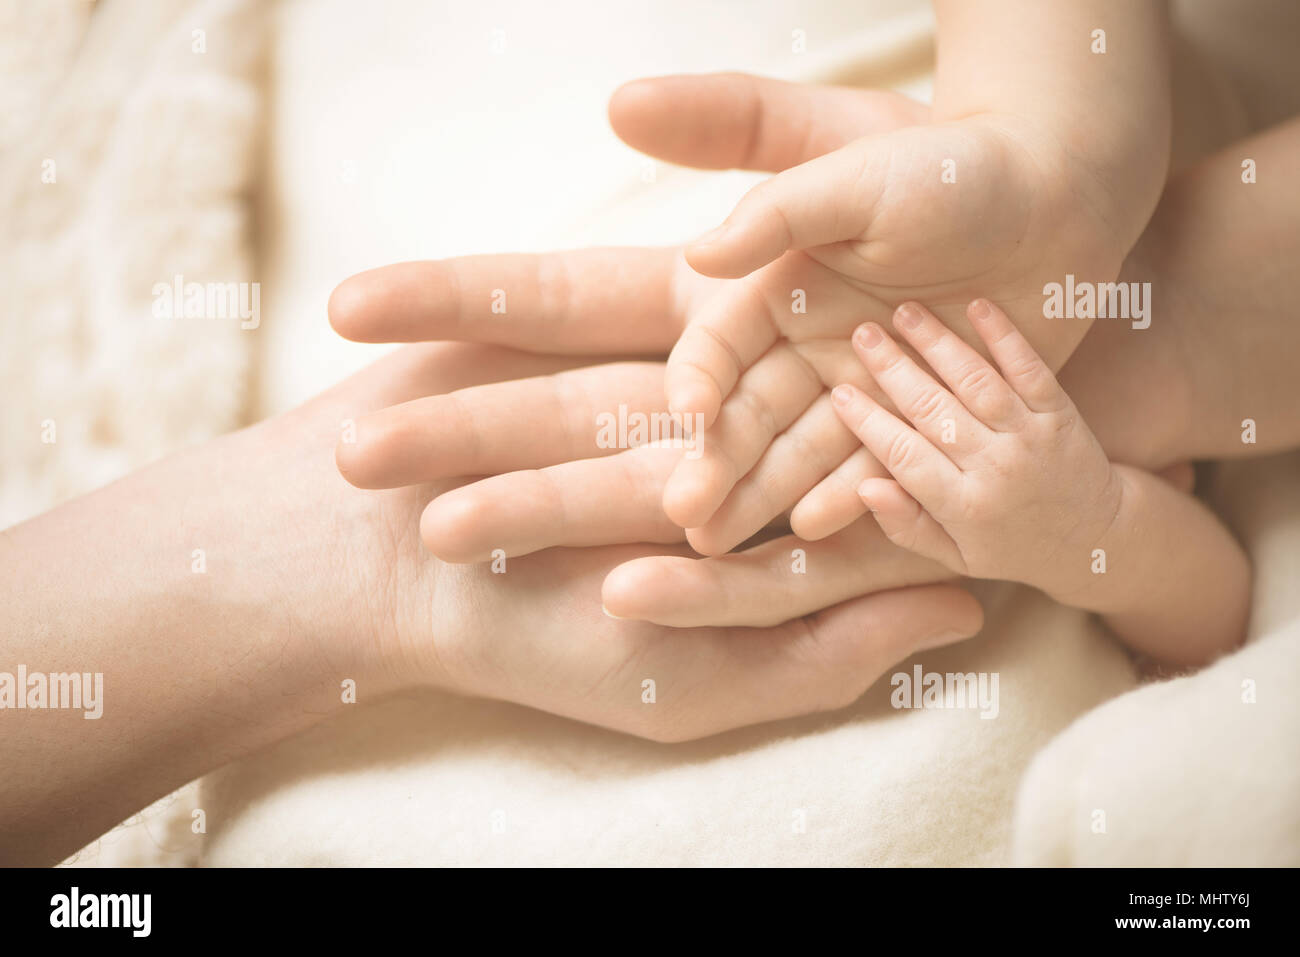 Le nouveau-né de la main. Libre de parents bébé main dans la main. La famille, la maternité et la naissance concept. Banque D'Images